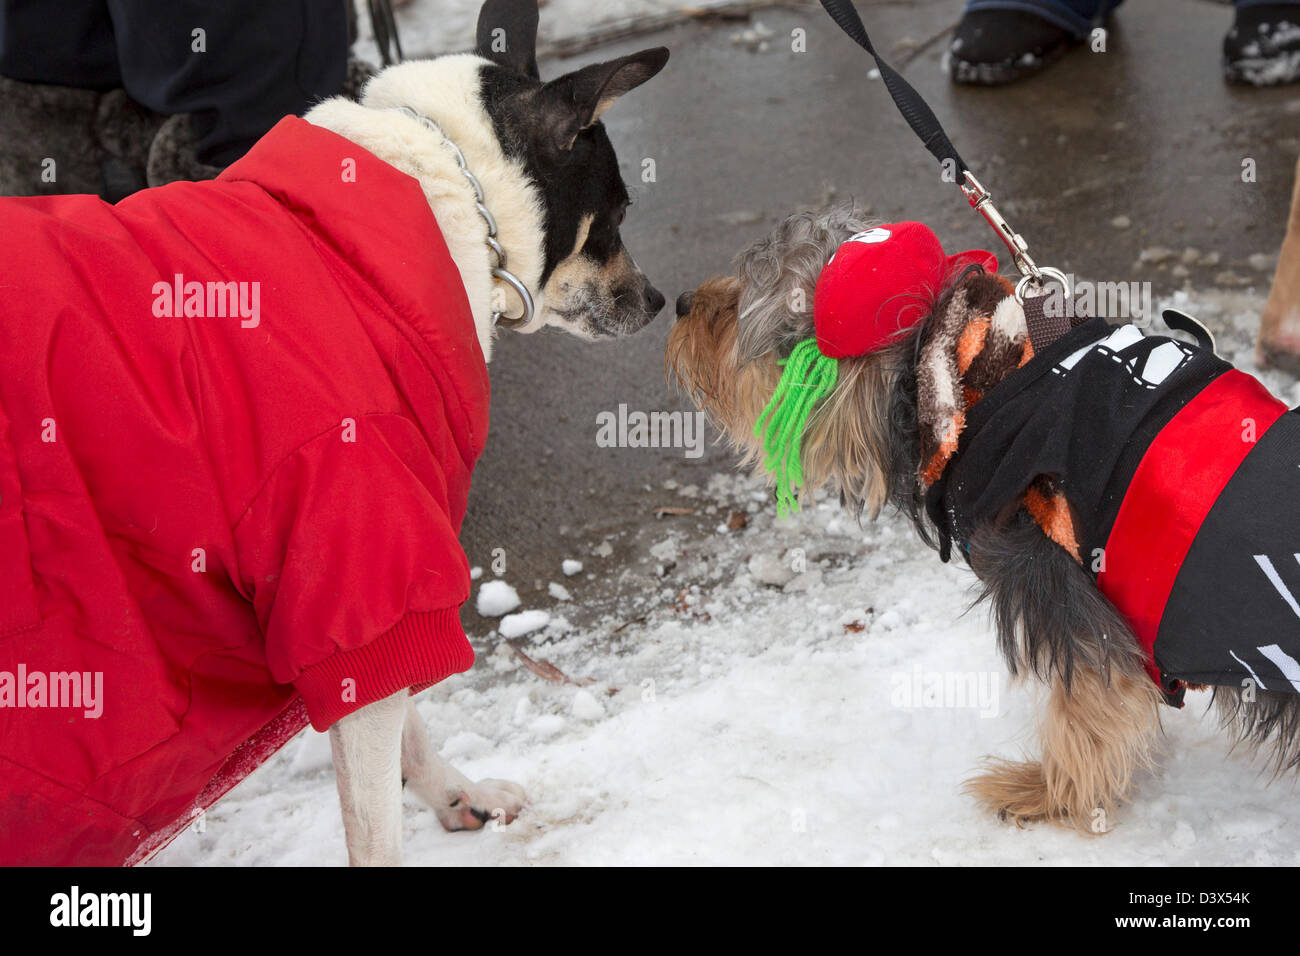 Detroit, Michigan - Teilnehmer in einer "Doggie-Modenschau" im Winter Fest, ein Winterfestival in Detroit Palmer Park. Stockfoto